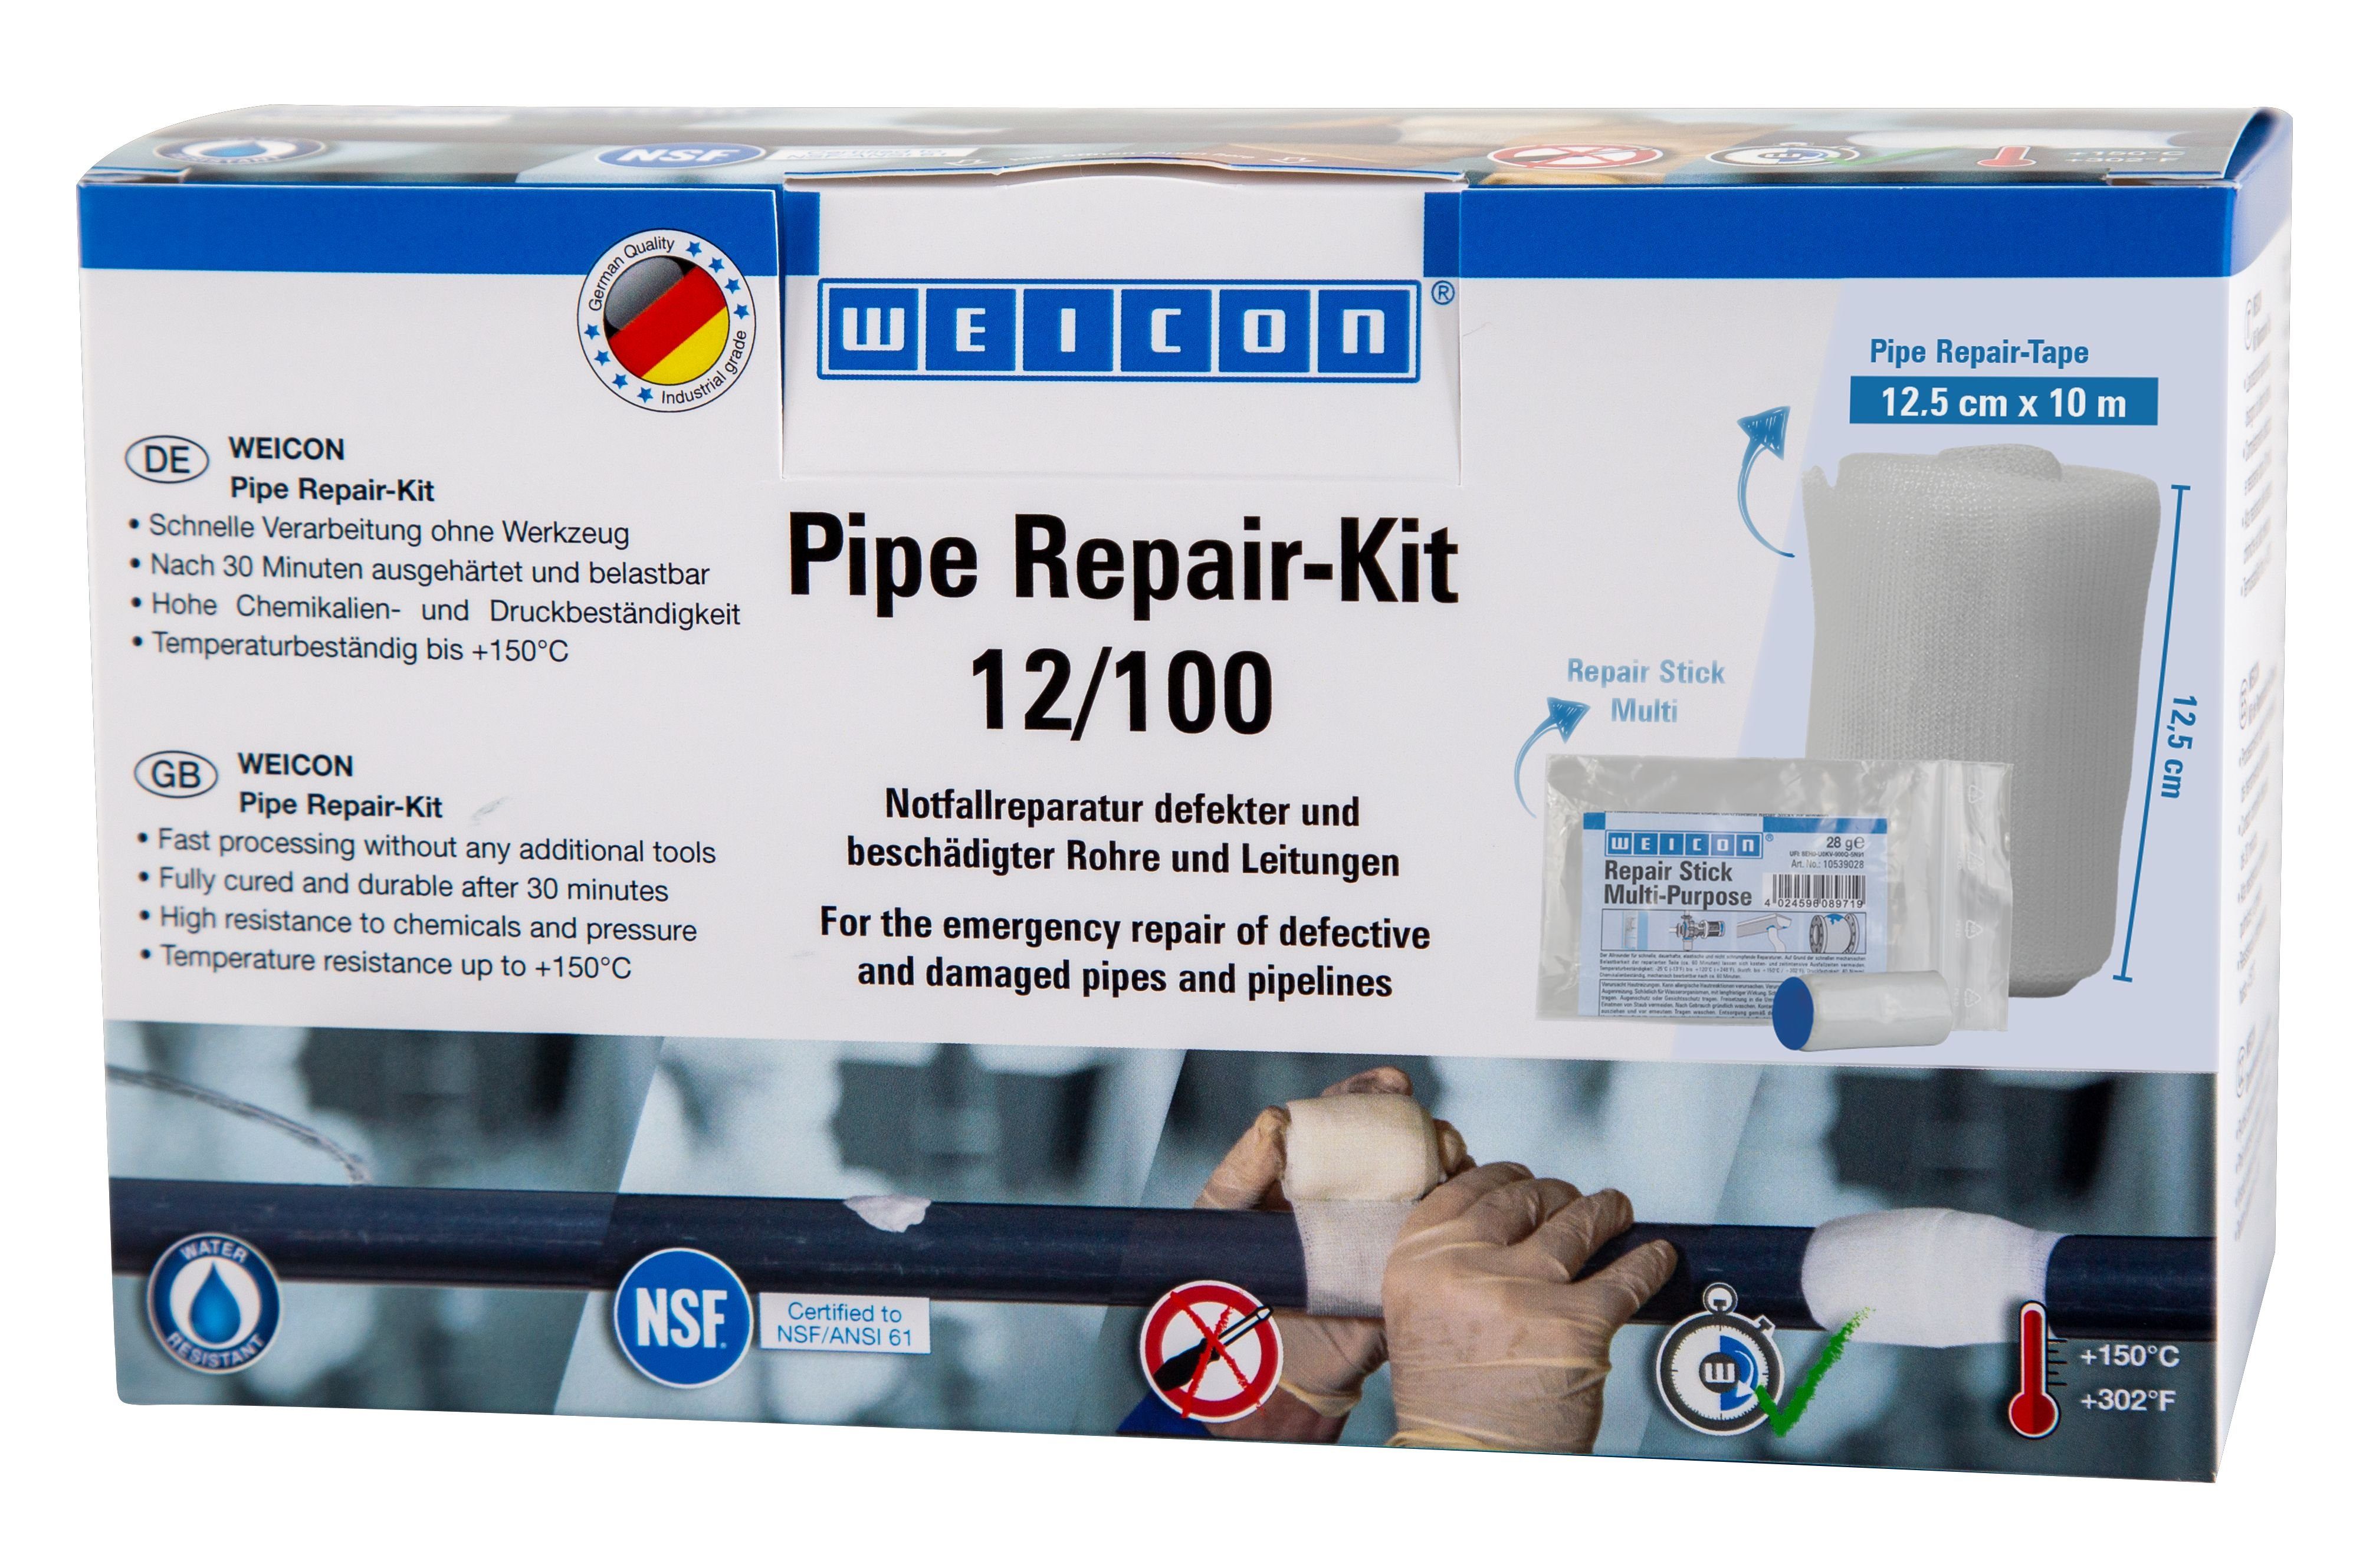 Pipe Rohre Leitungen 10 beschädigter und Repair-Kit, Notfall-Reparatur Reparatur-Set m x cm 12,5 WEICON